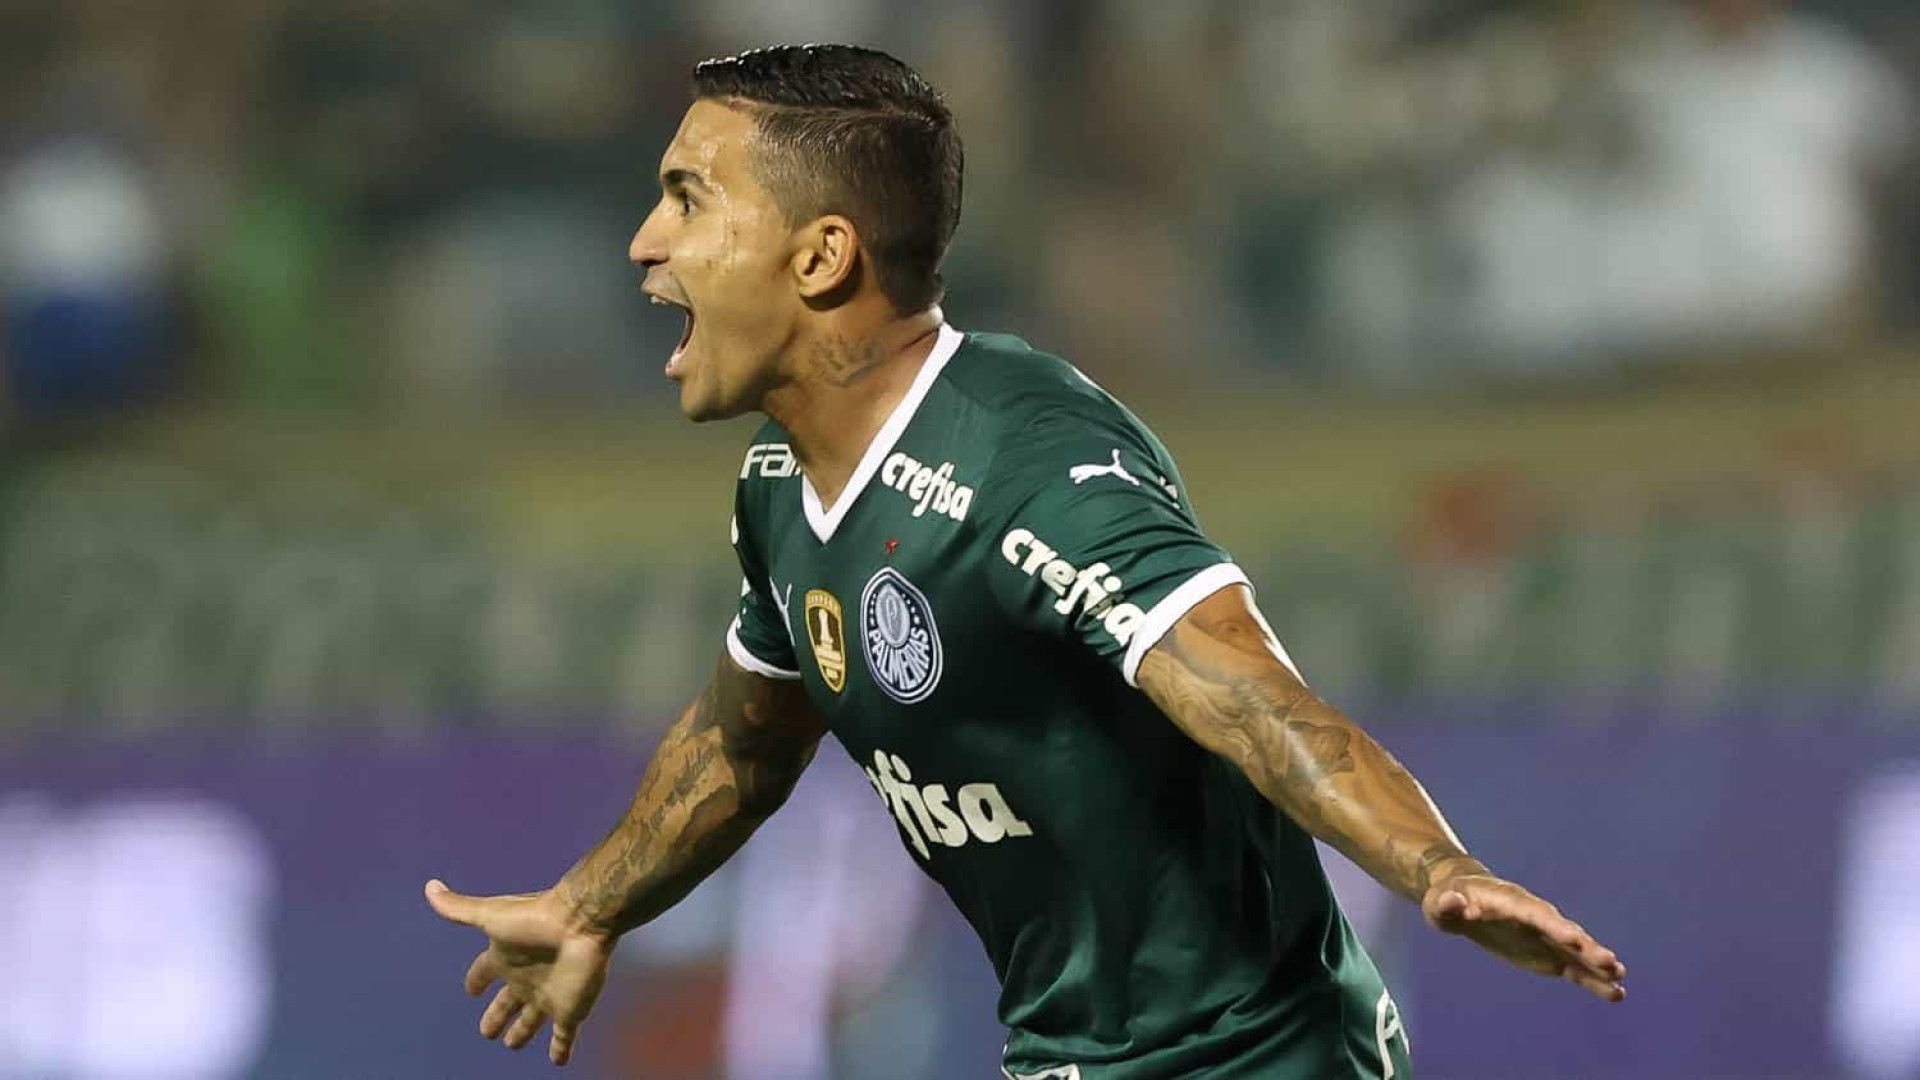 Dudu pode ficar até um ano sem jogar após lesão, veja previsão do Palmeiras